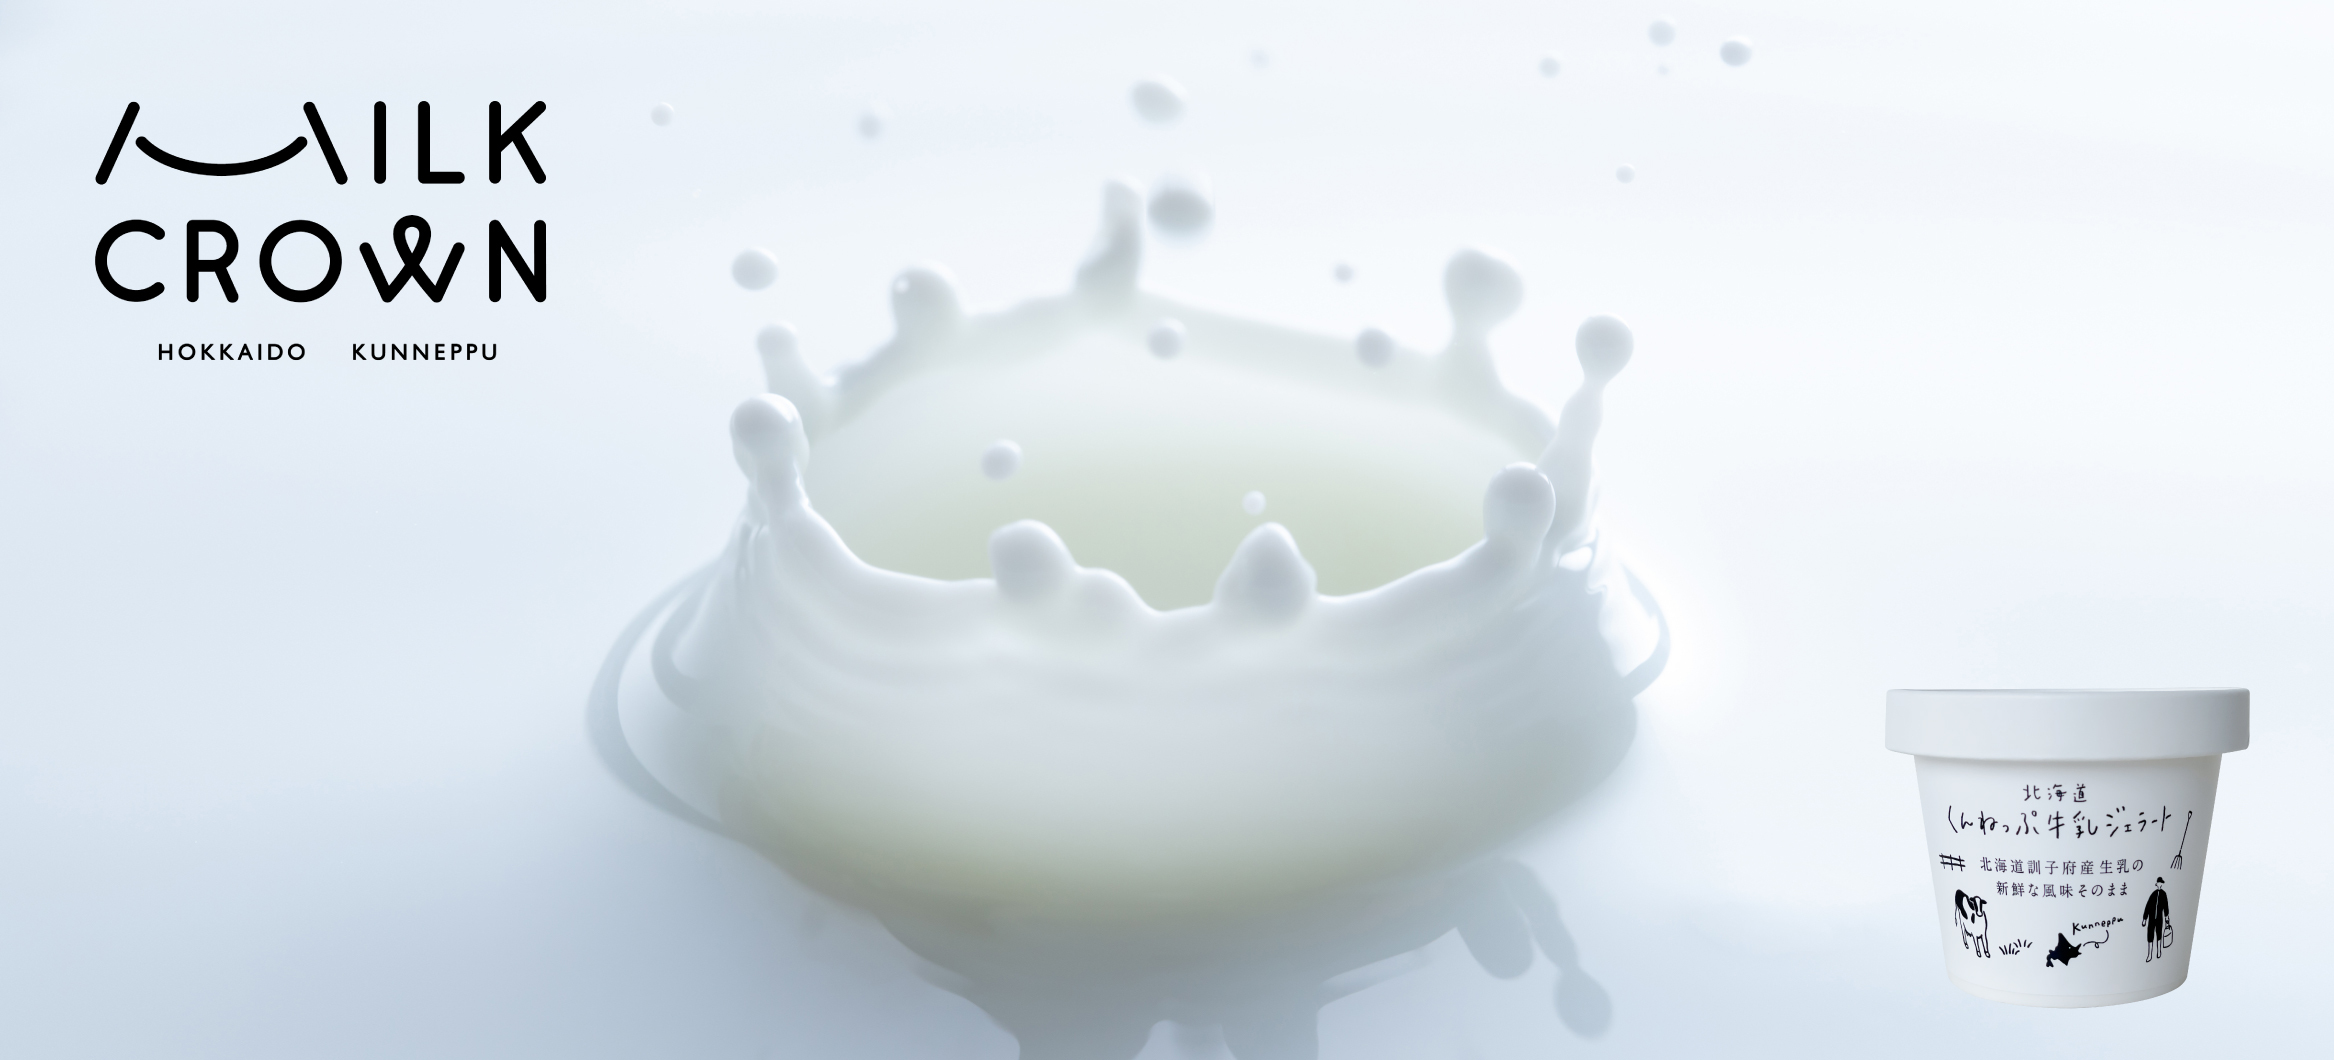 Milk Crown ミルククラウン 北海道ジェラート プレミアムバニラ 北海道くんねっぷ牛乳